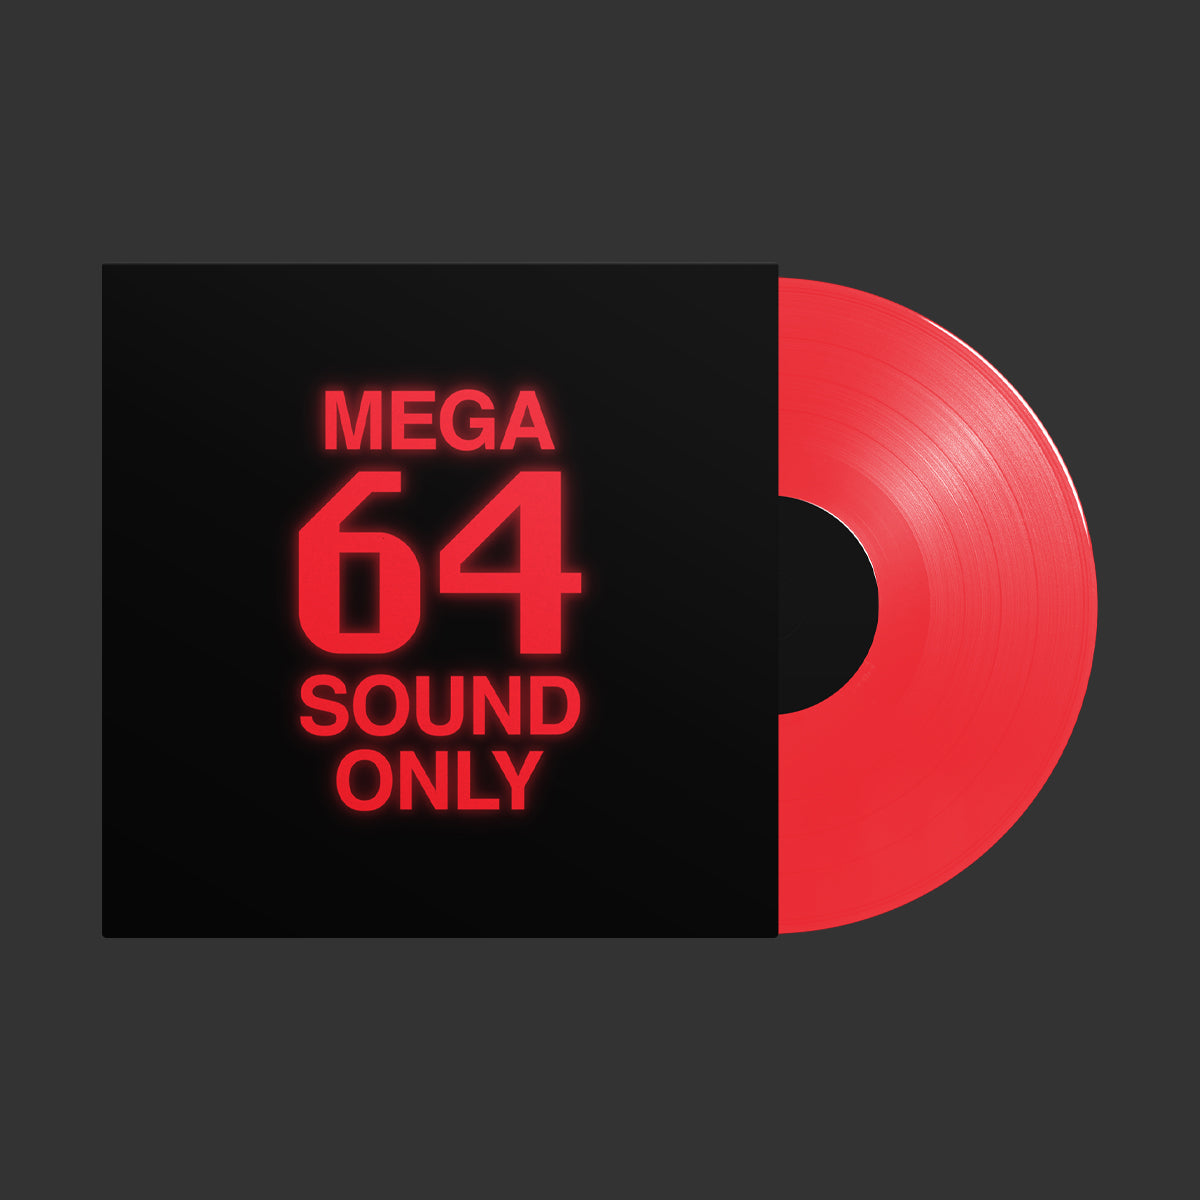 Media – Mega64 Online Store